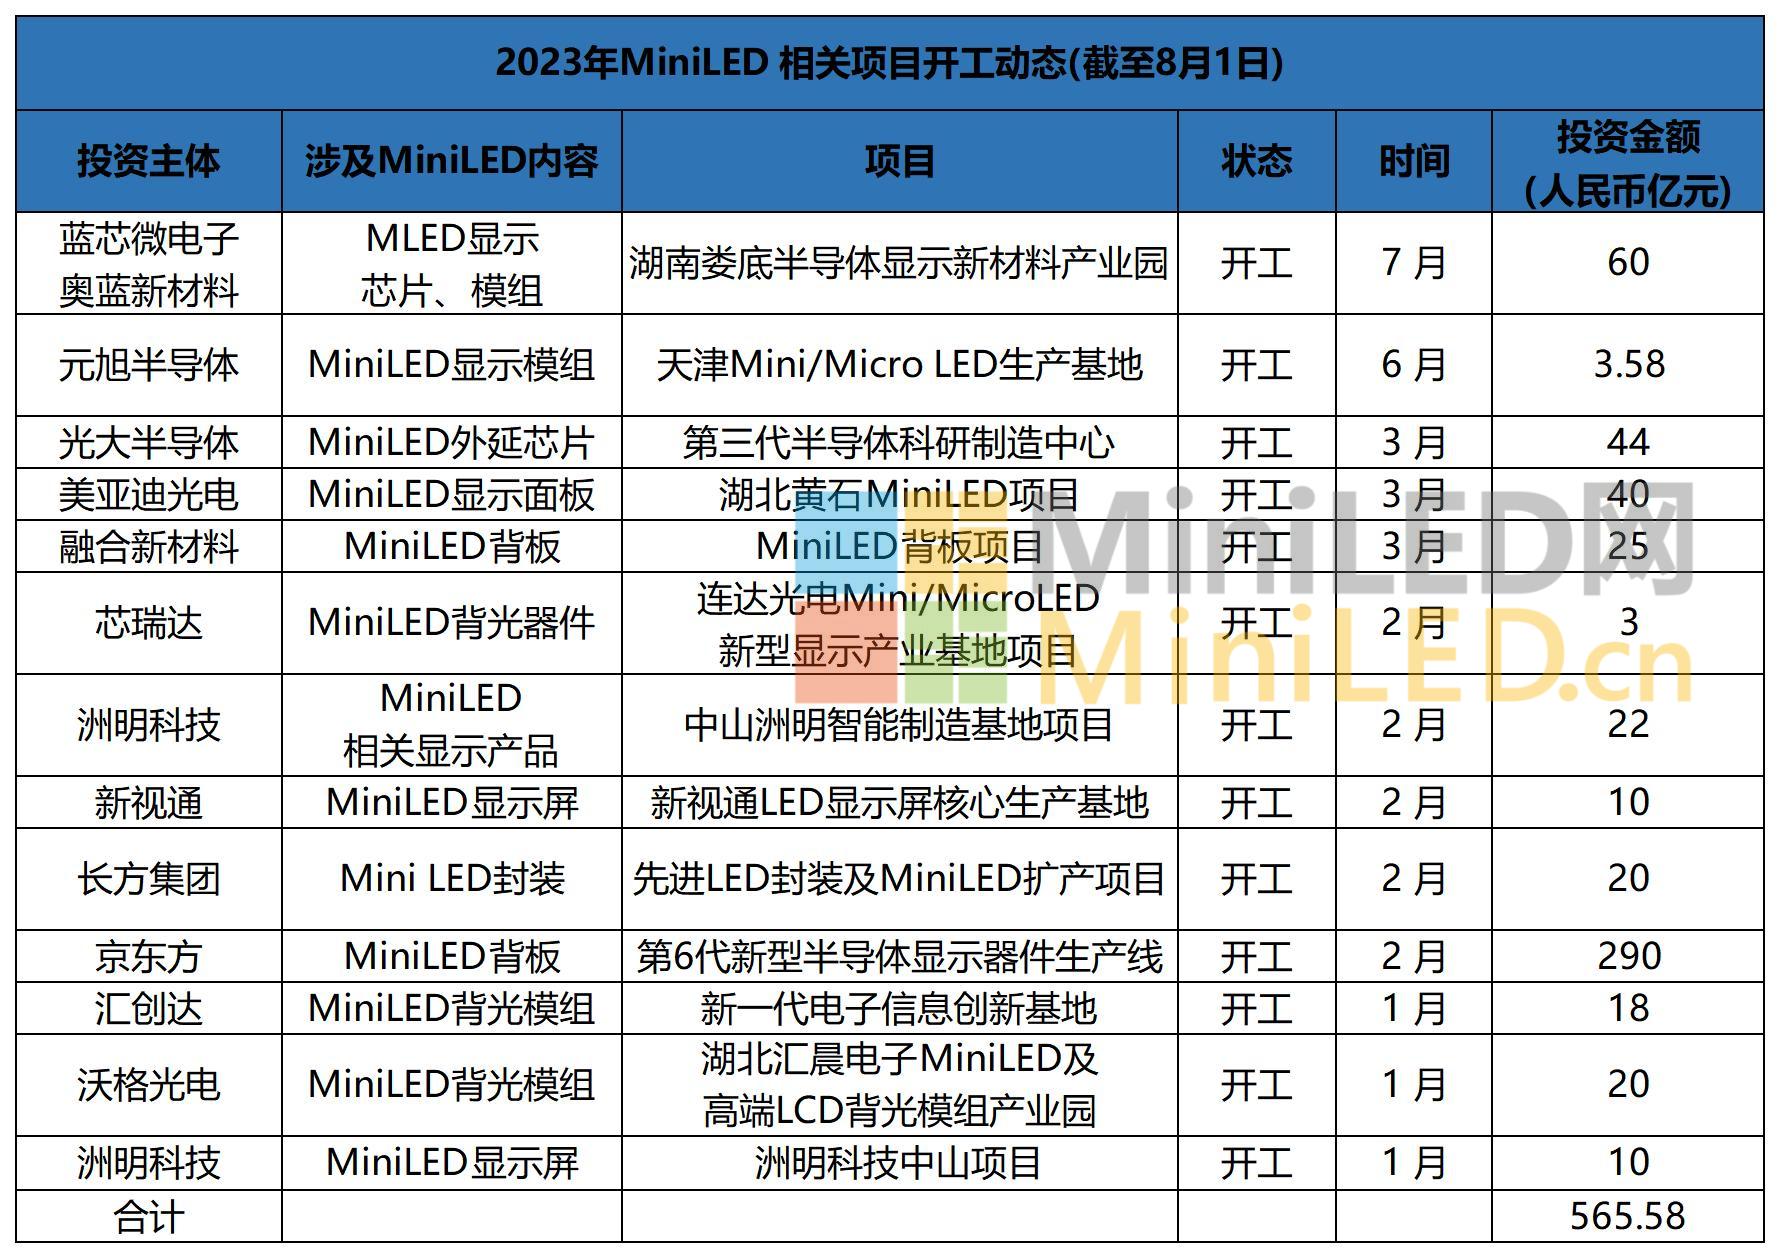 2023年MiniLED 相关项目开工动态(截至8月1日)_Sheet1.jpg